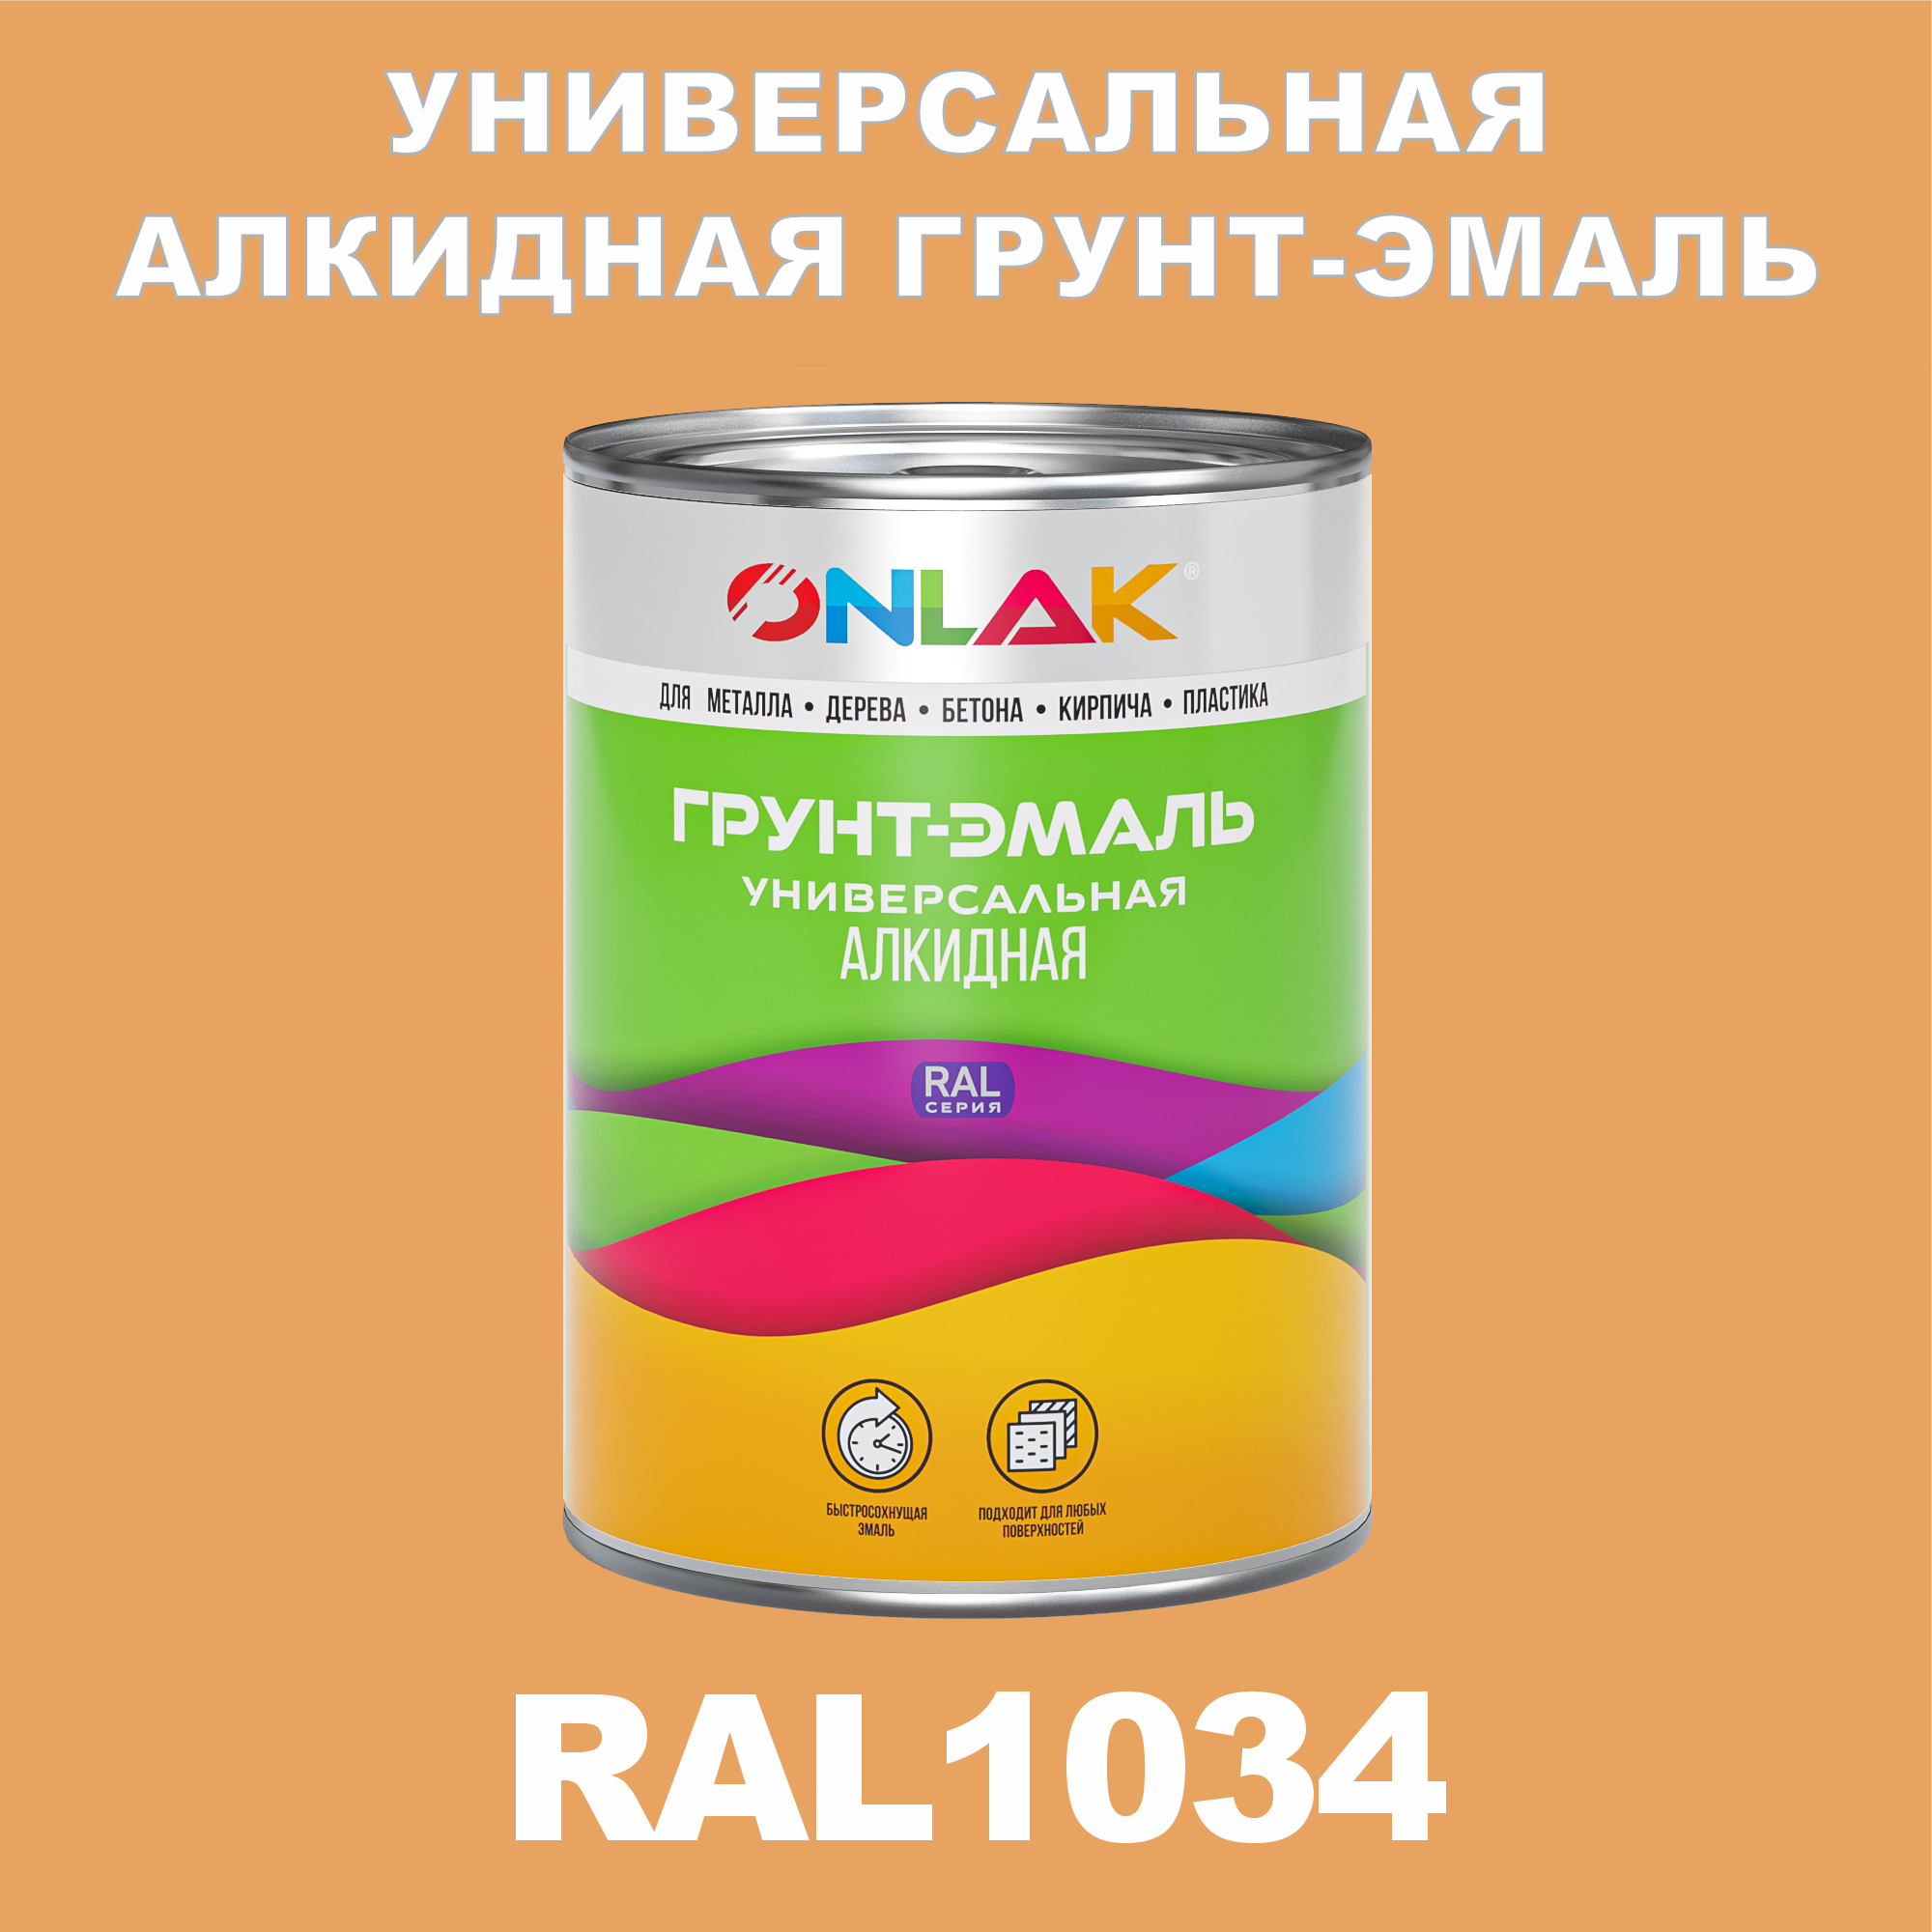 Грунт-эмаль ONLAK 1К RAL1034 антикоррозионная алкидная по металлу по ржавчине 1 кг грунт эмаль yollo по ржавчине алкидная зеленая 0 9 кг